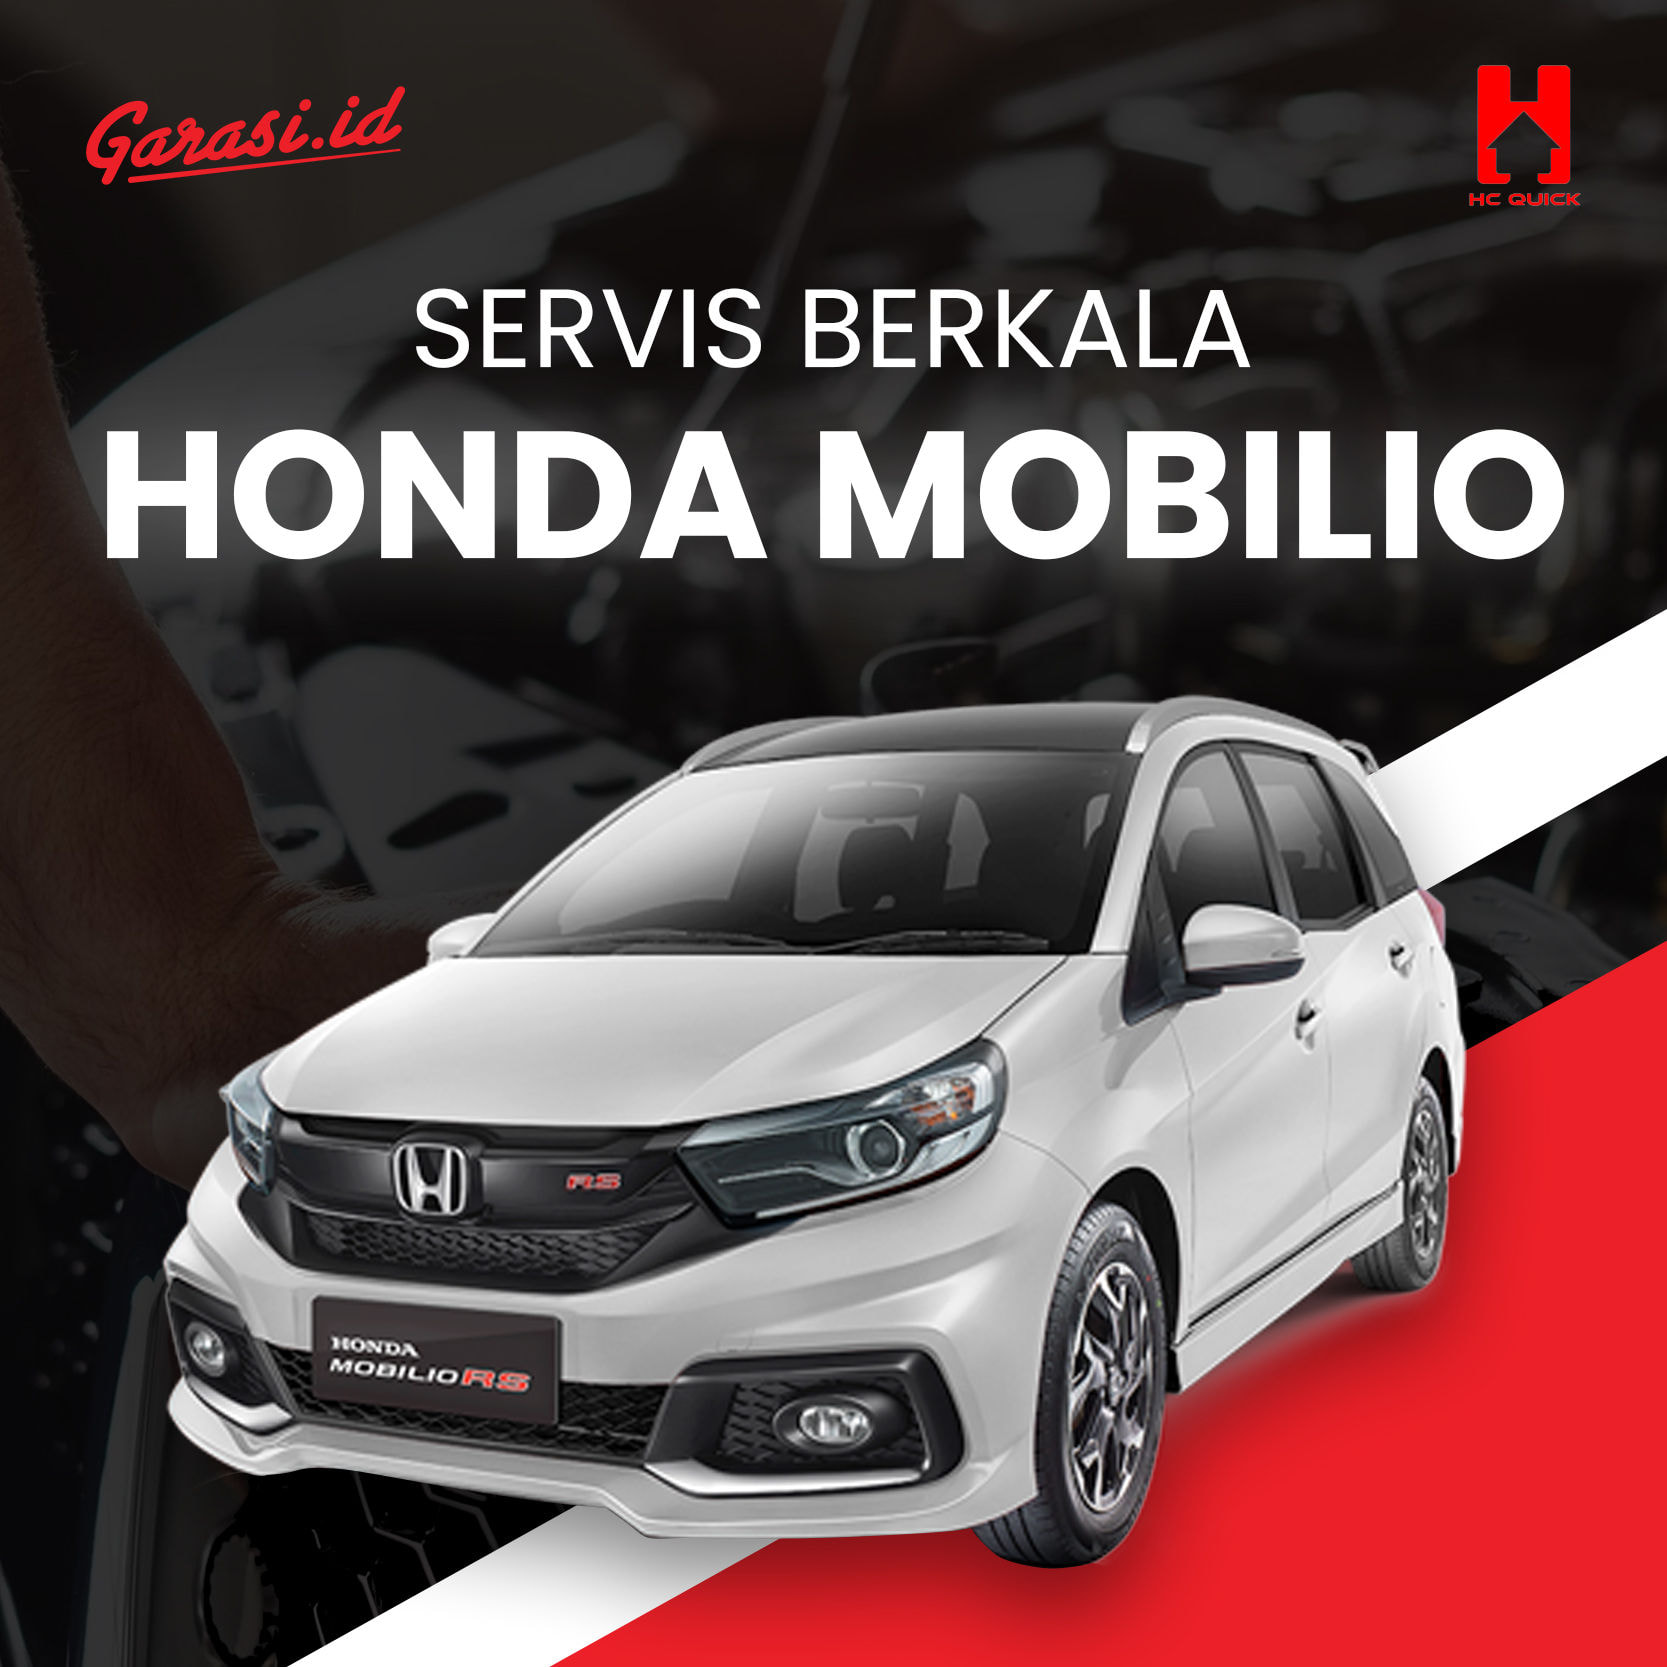 Paket perawatan service berkala Honda Mobilio